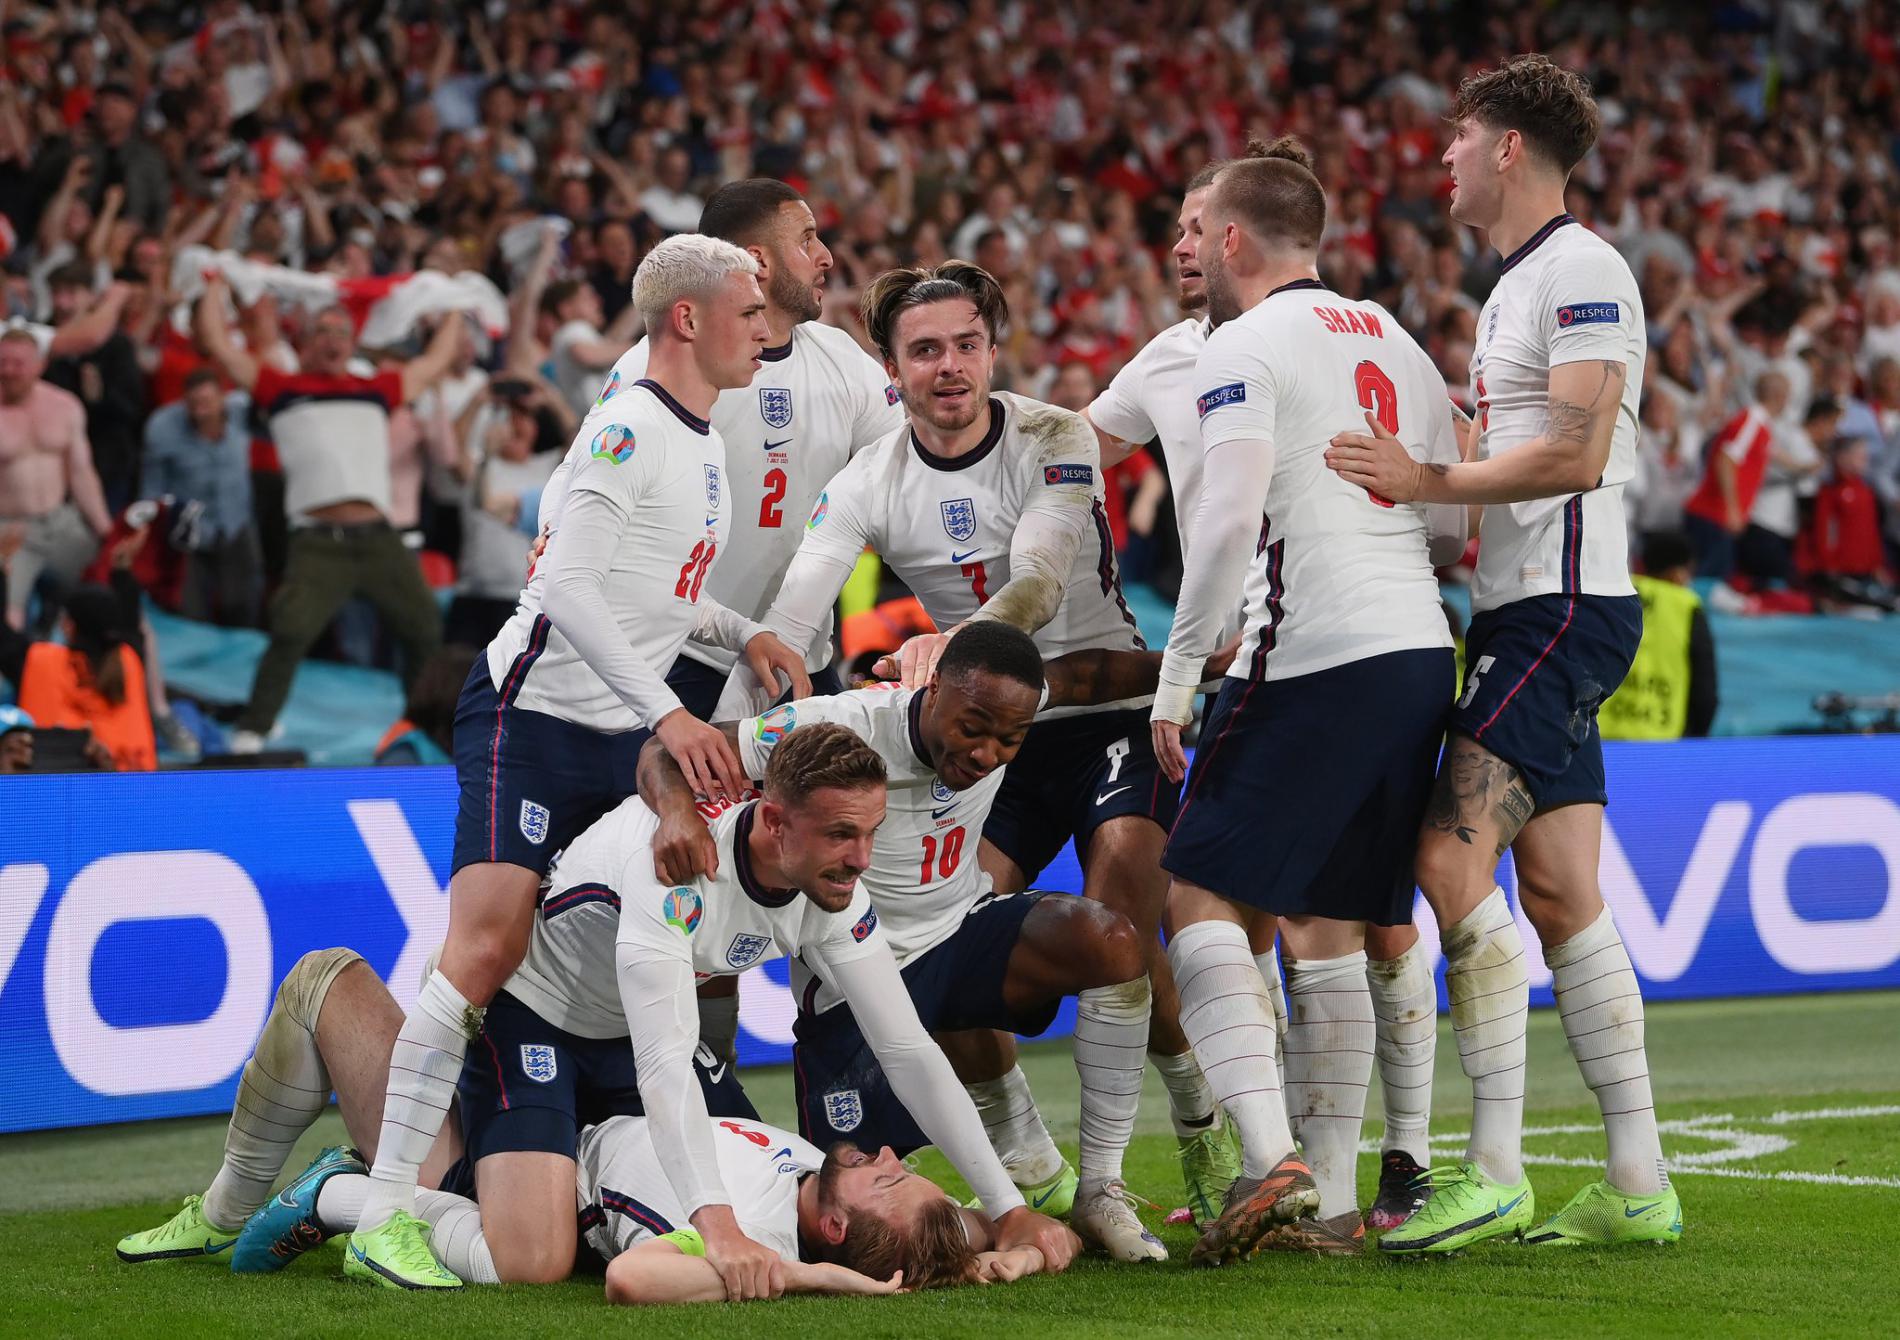 Taklukan Denmark Inggris Sukses Masuk Final Euro 2020, dengan Gol dari Harry Kane